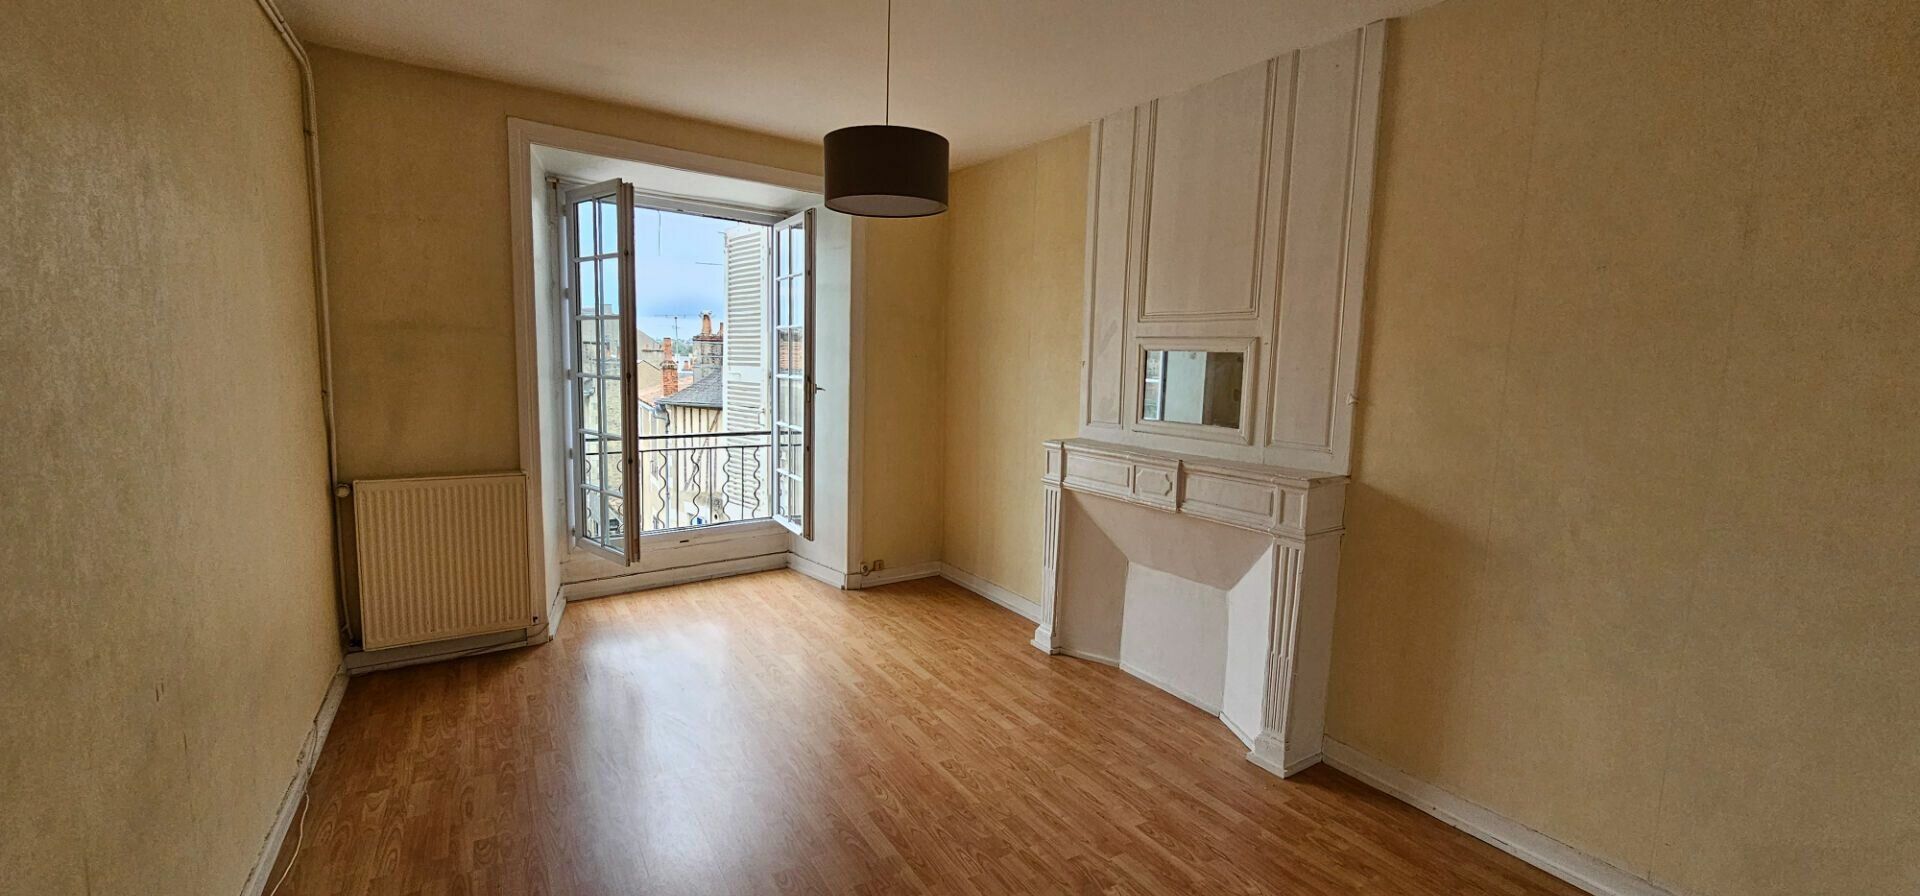 Appartement à vendre 2 71.31m2 à Poitiers vignette-3